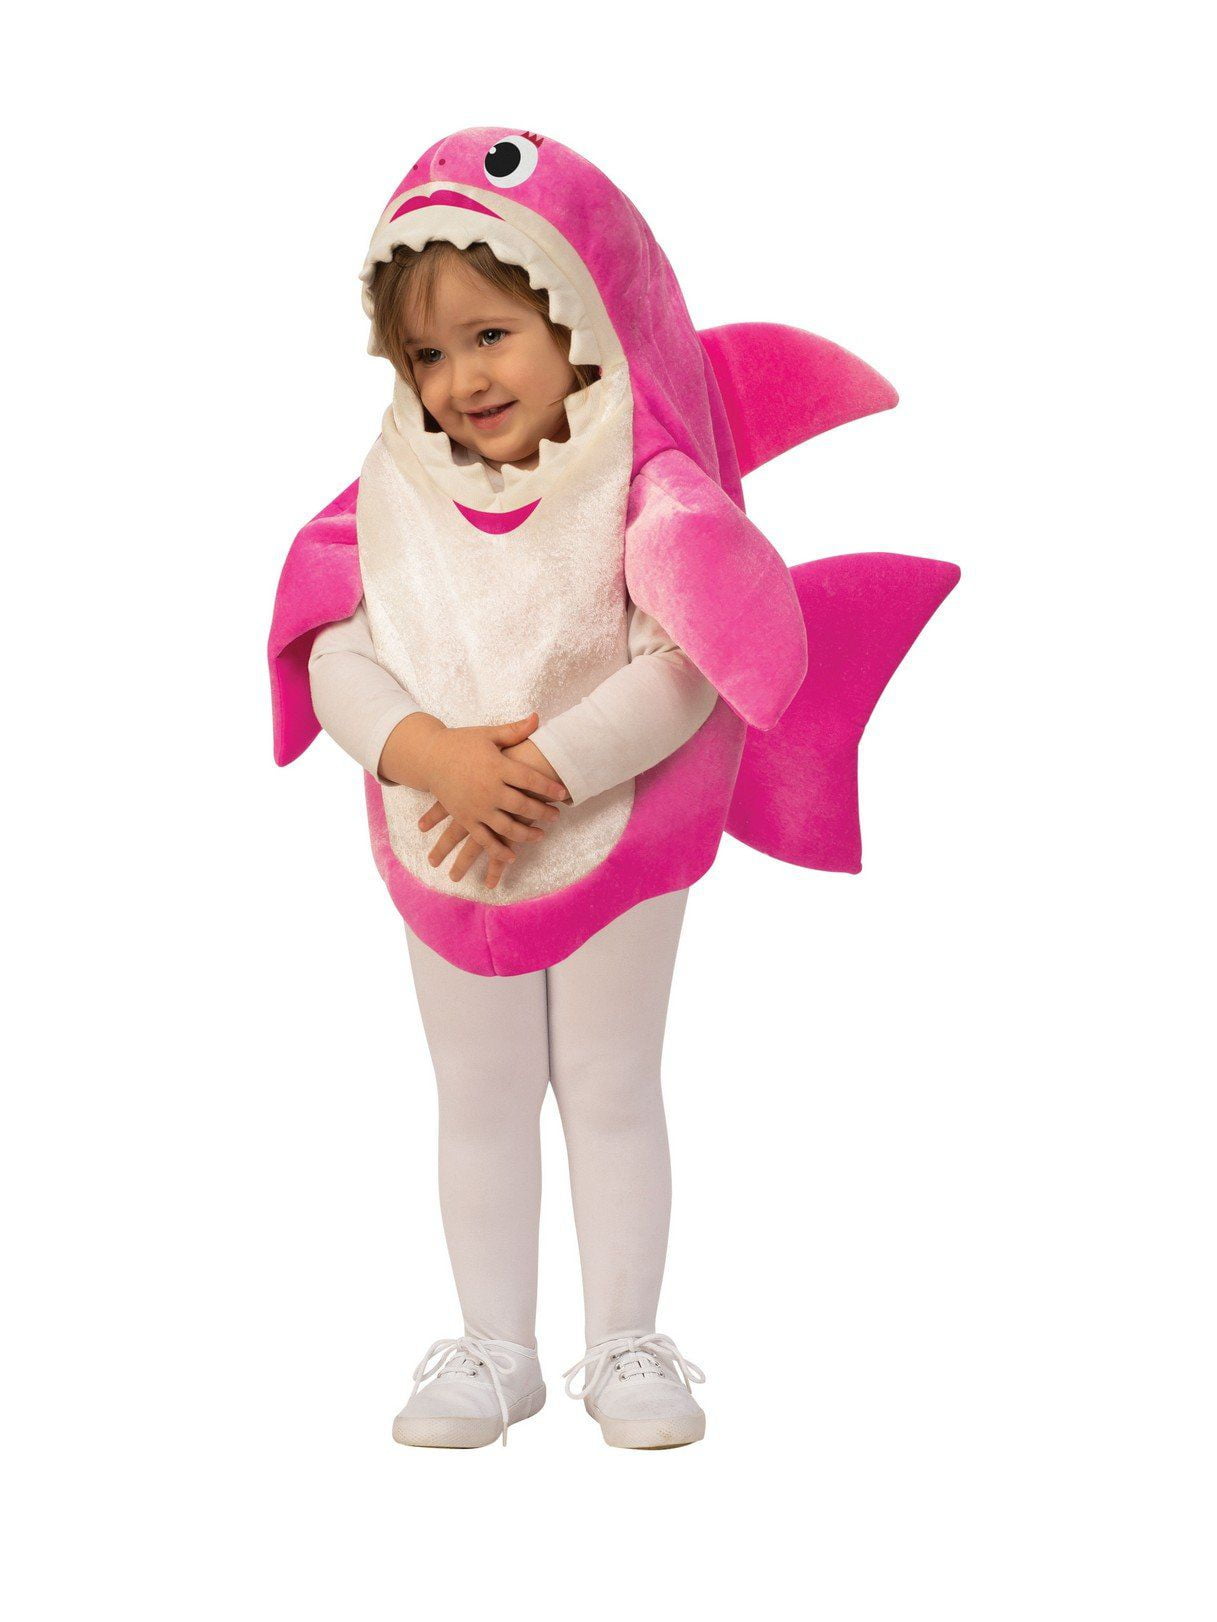 Baby Shark - Mommy Shark Kids Costume